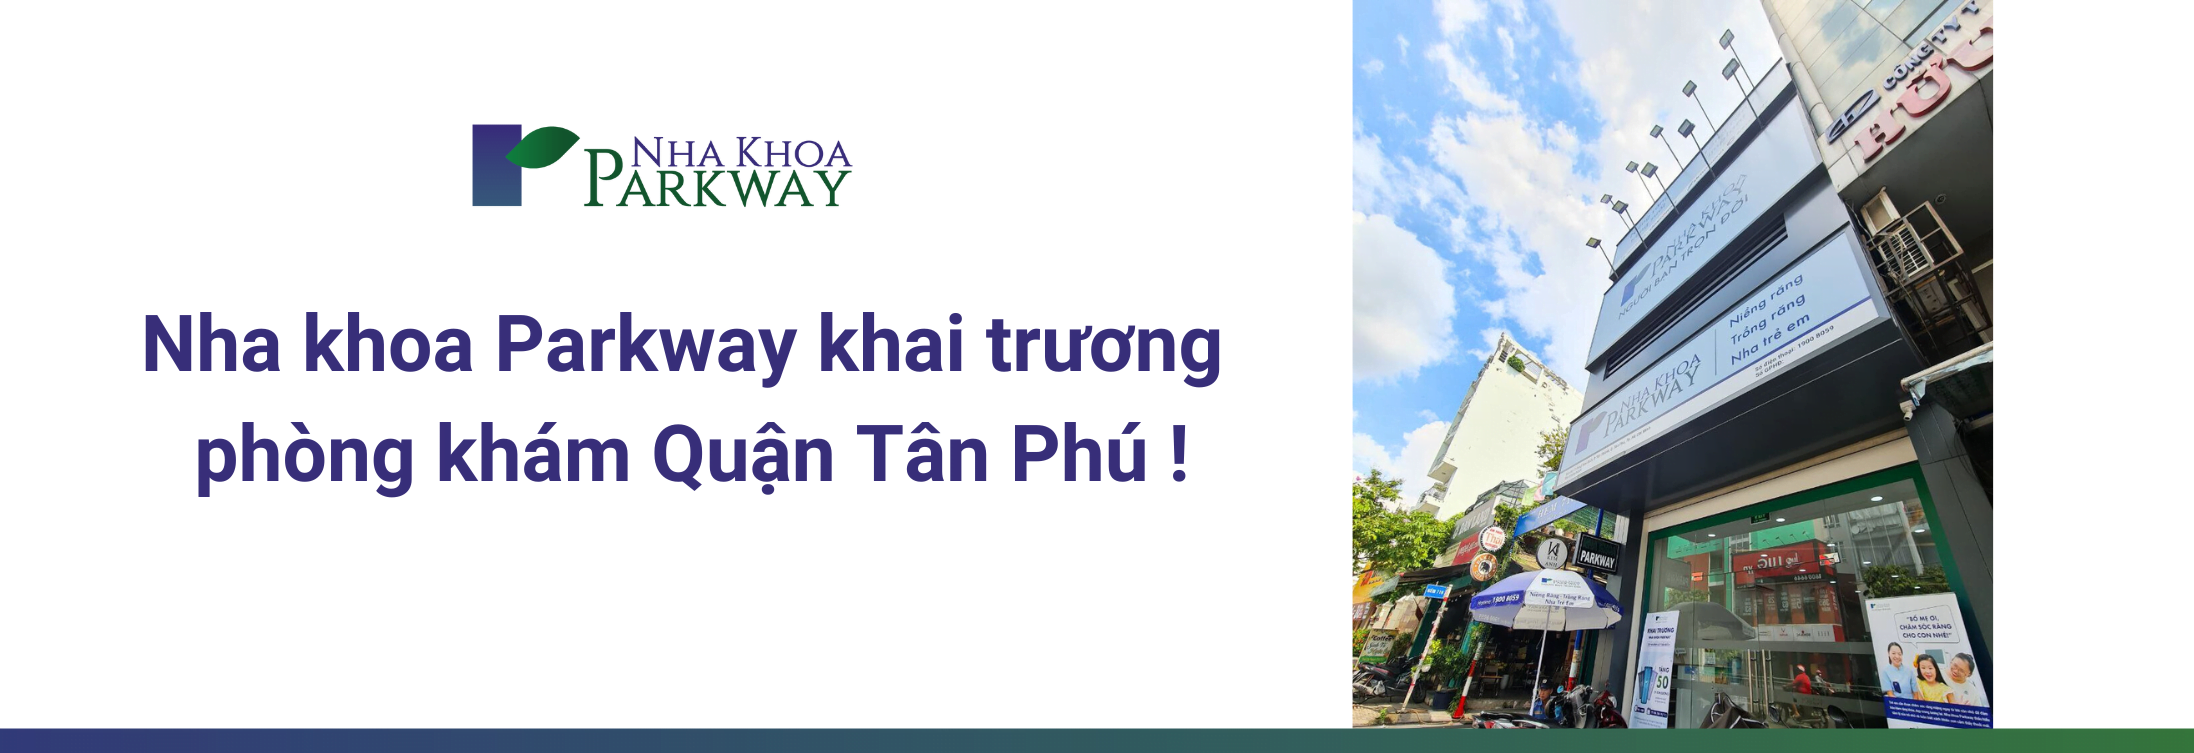 Nha khoa Parkway tiếp tục mở rộng – khai trương chi nhánh Luỹ Bán Bích, Tân Phú! 